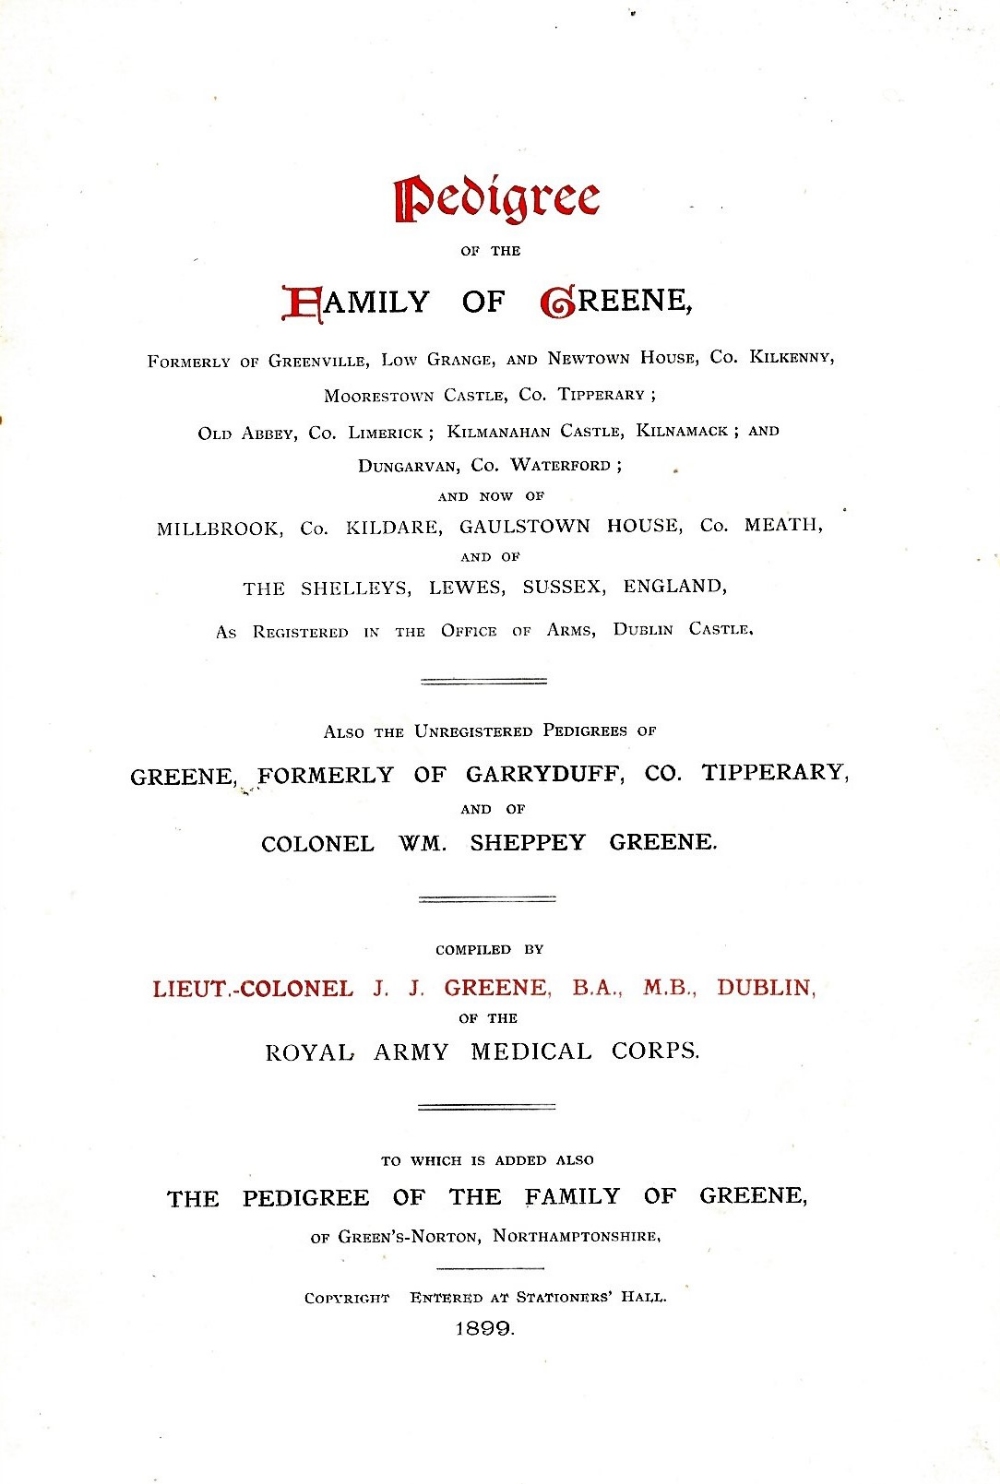 Scarce Irish Family History